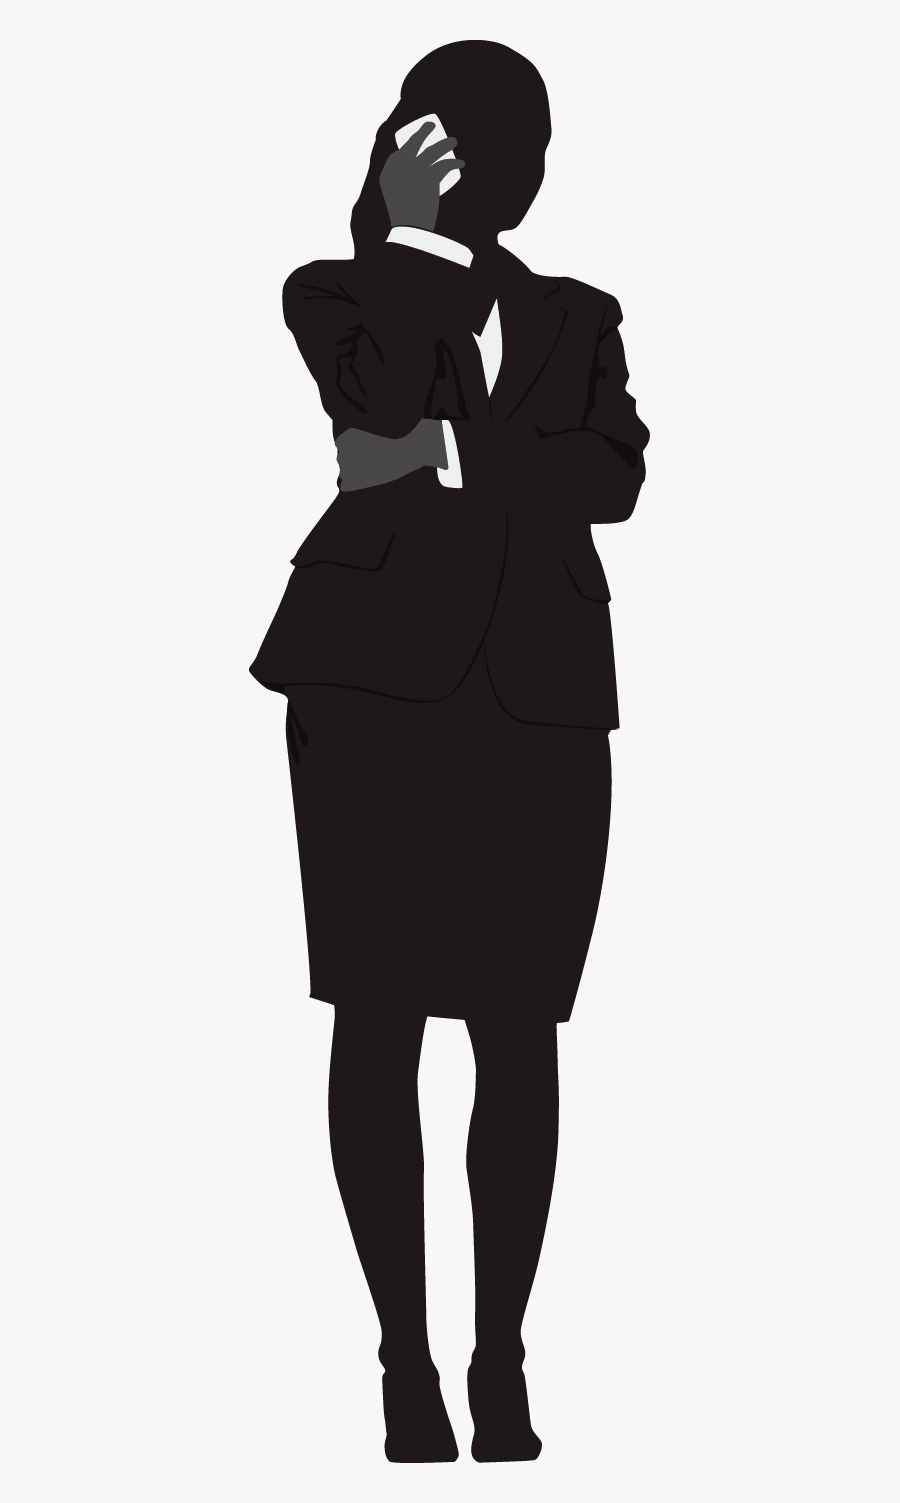 Woman Silhouette, Transparent Clipart